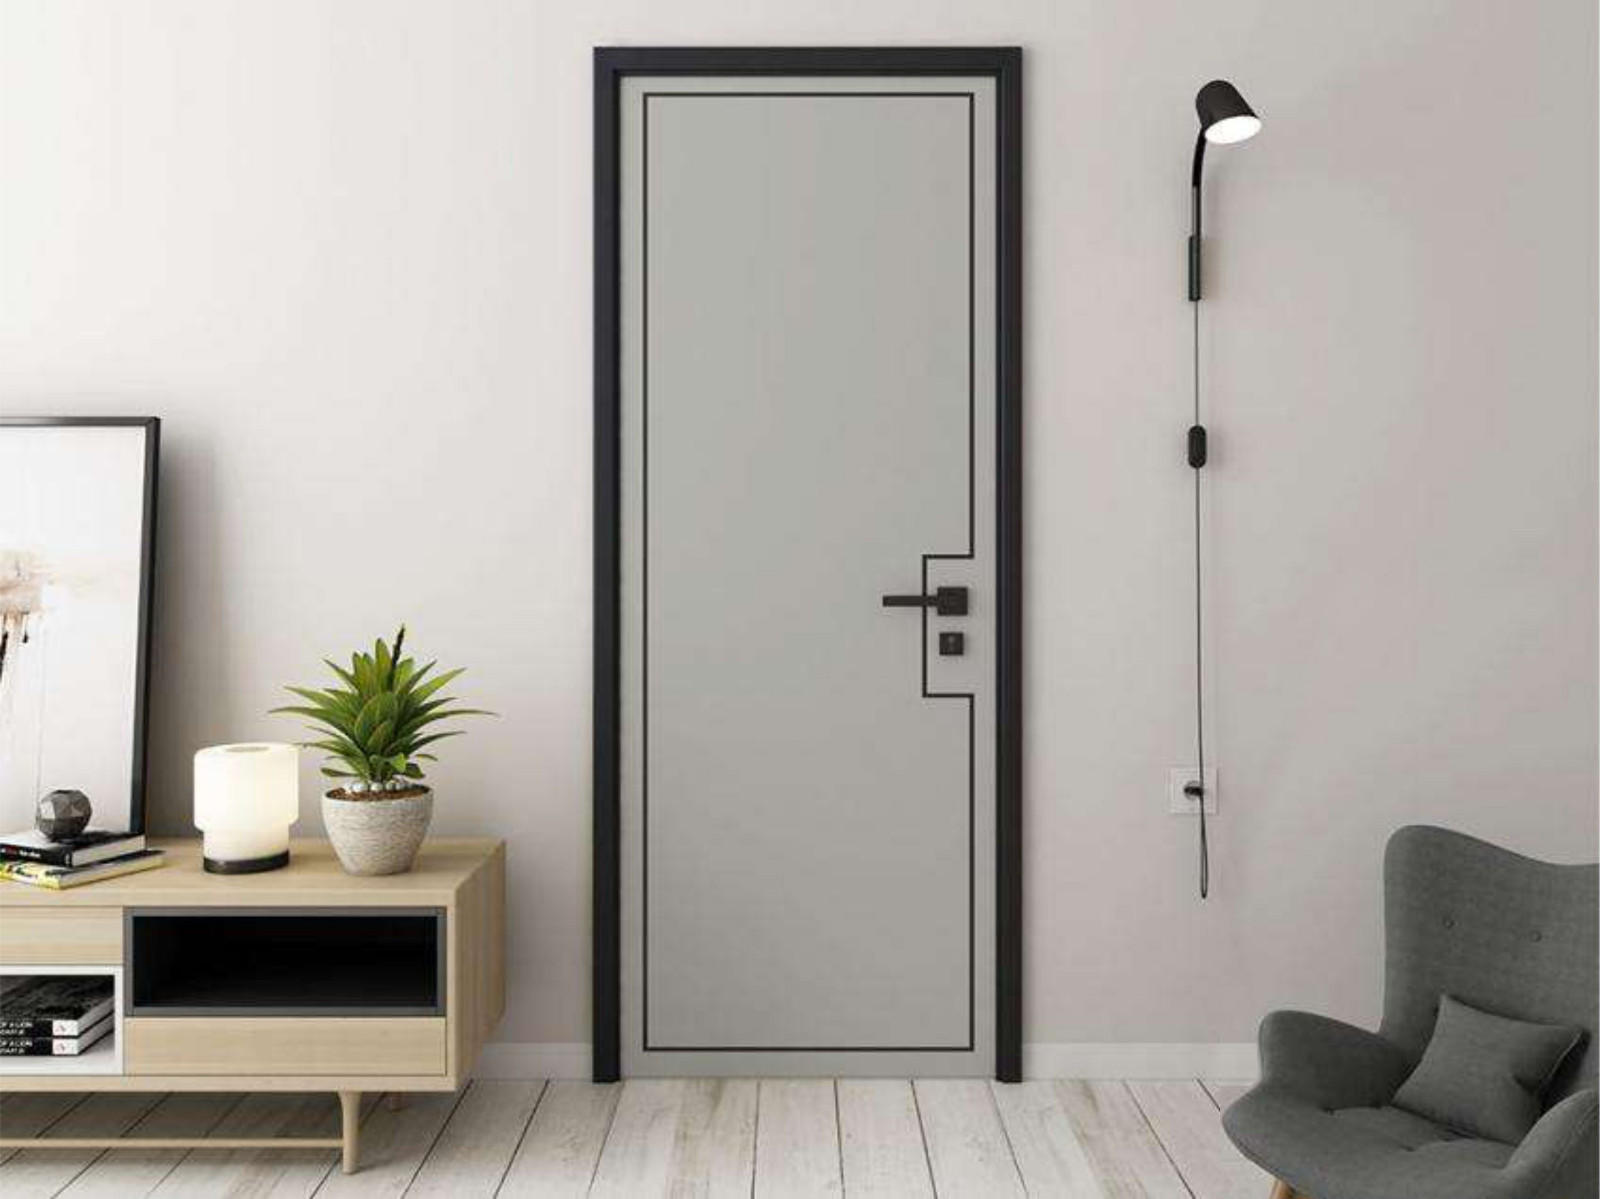 custom contemporary internal doors fashion for bedroom Casen